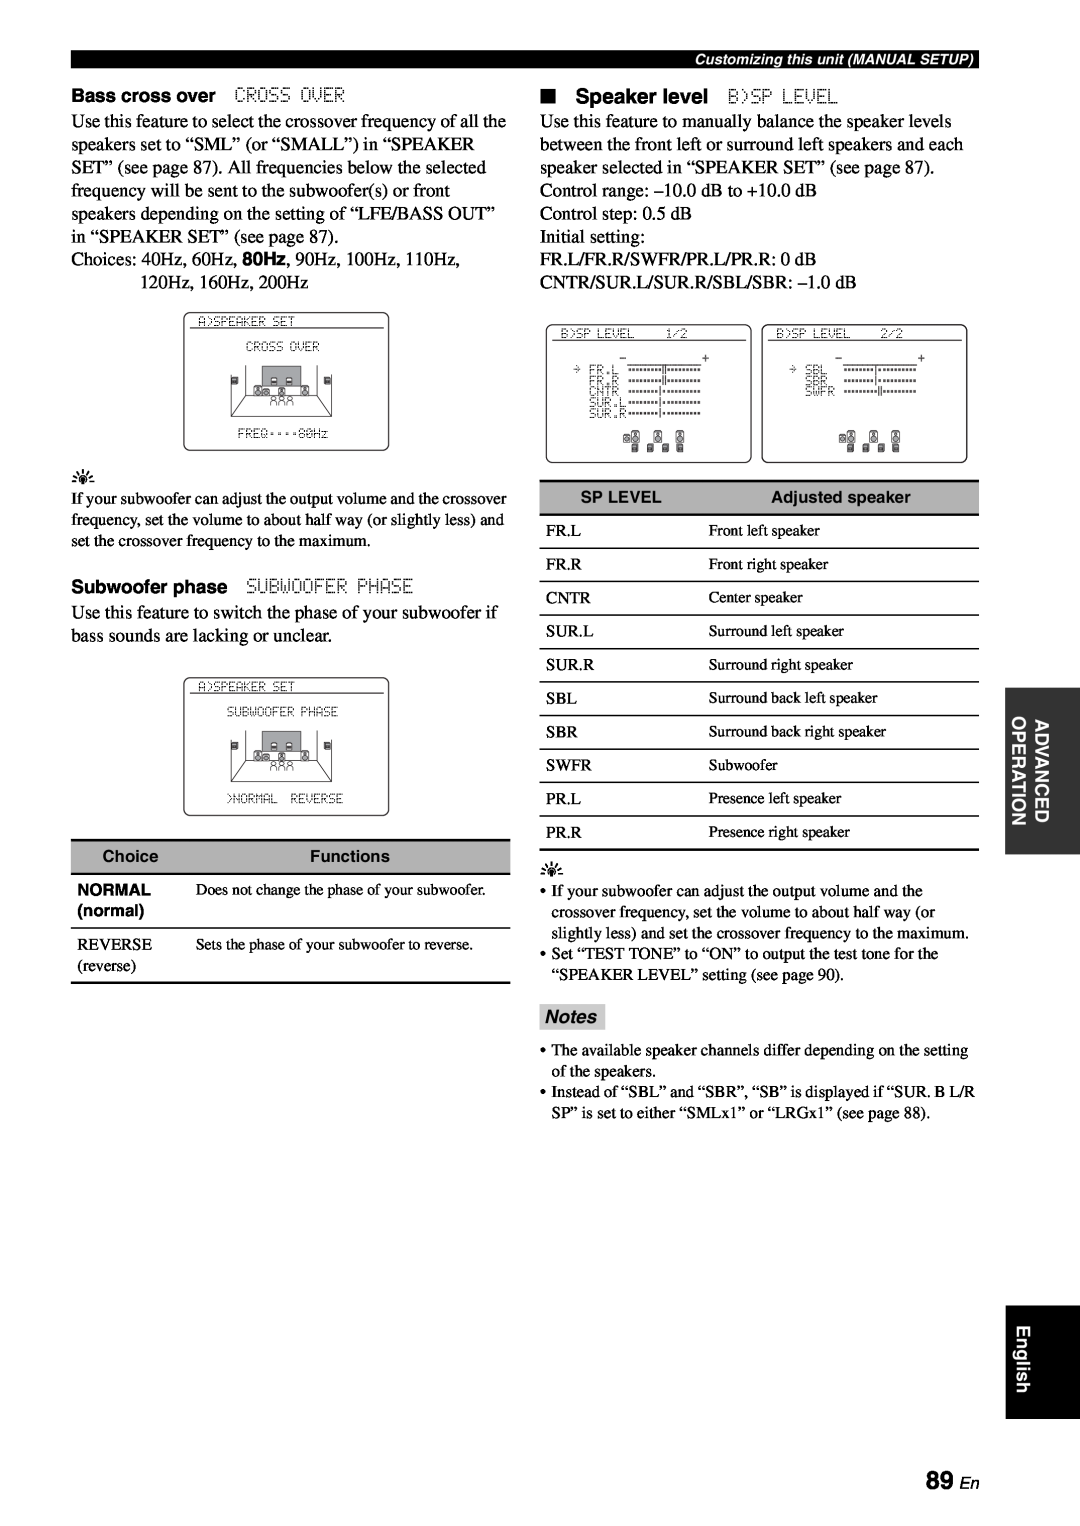 Yamaha RX-V863 owner manual 89 En, Speaker level BSP LEVEL, Notes 